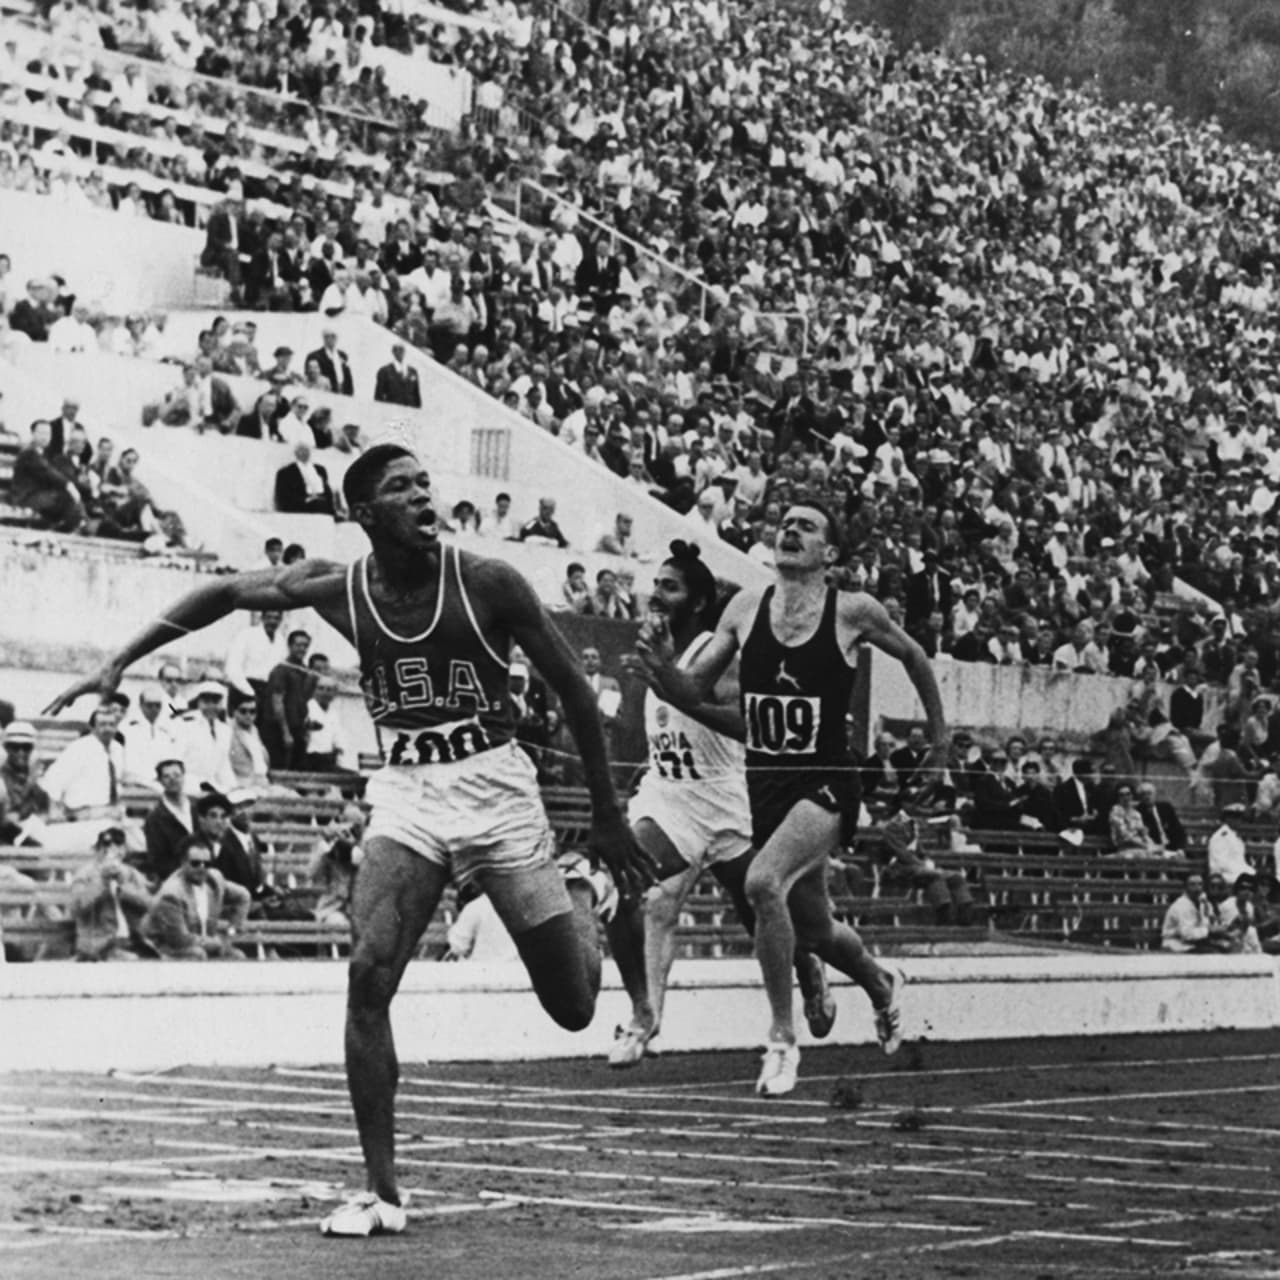 ハリーがローマオリンピック男子100mで金メダル